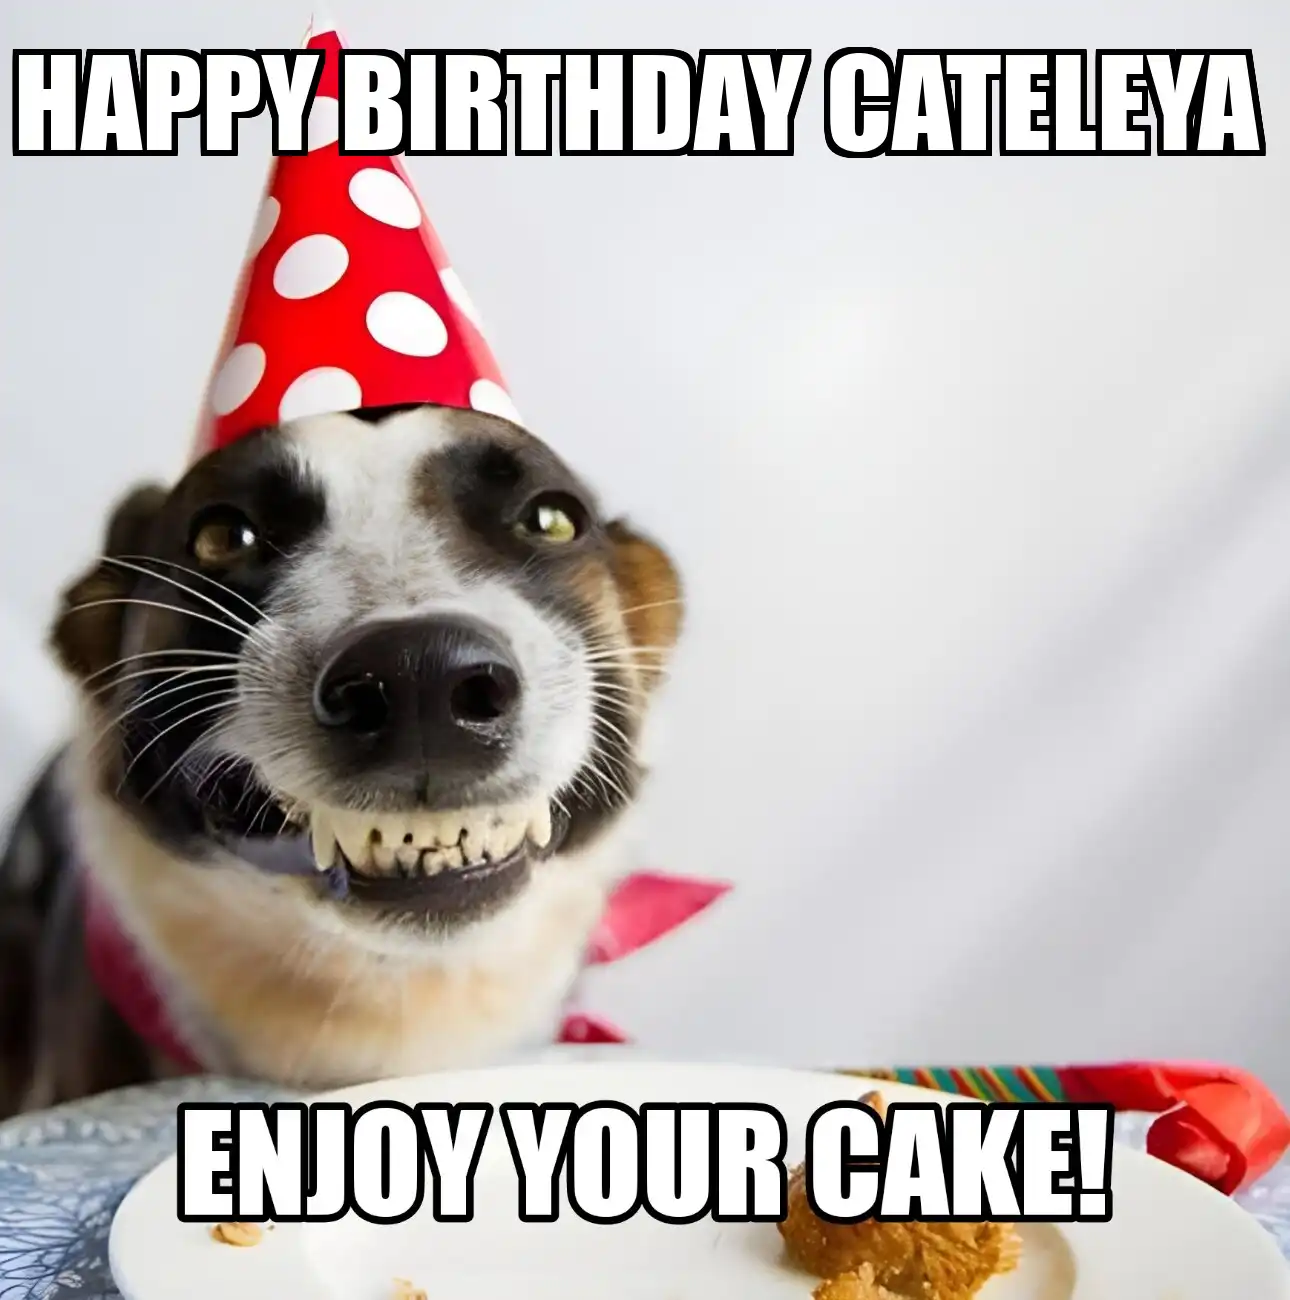 Happy Birthday Cateleya Enjoy Your Cake Dog Meme